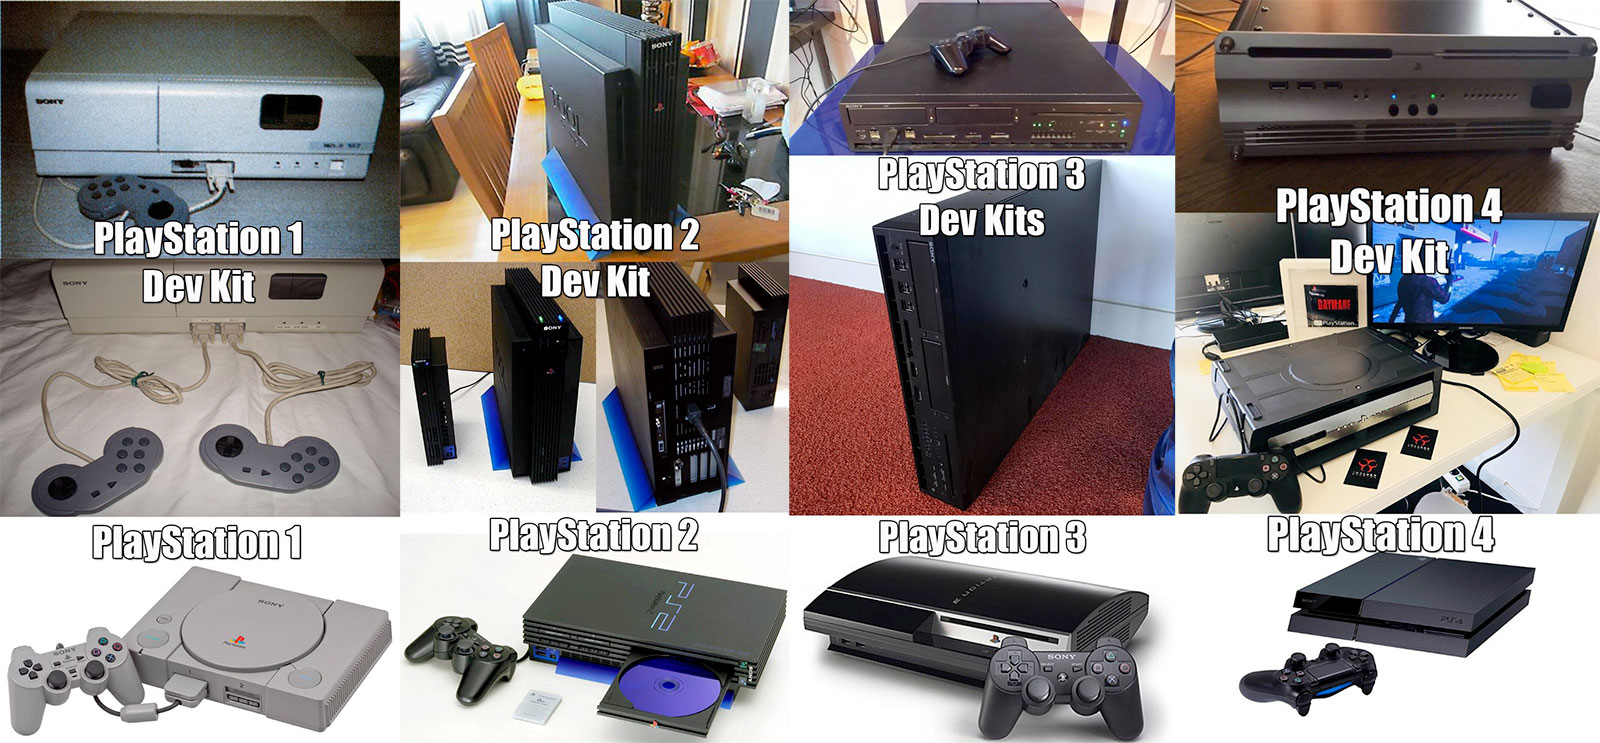 Девкиты и пользовательские приставки Sony Playstation 